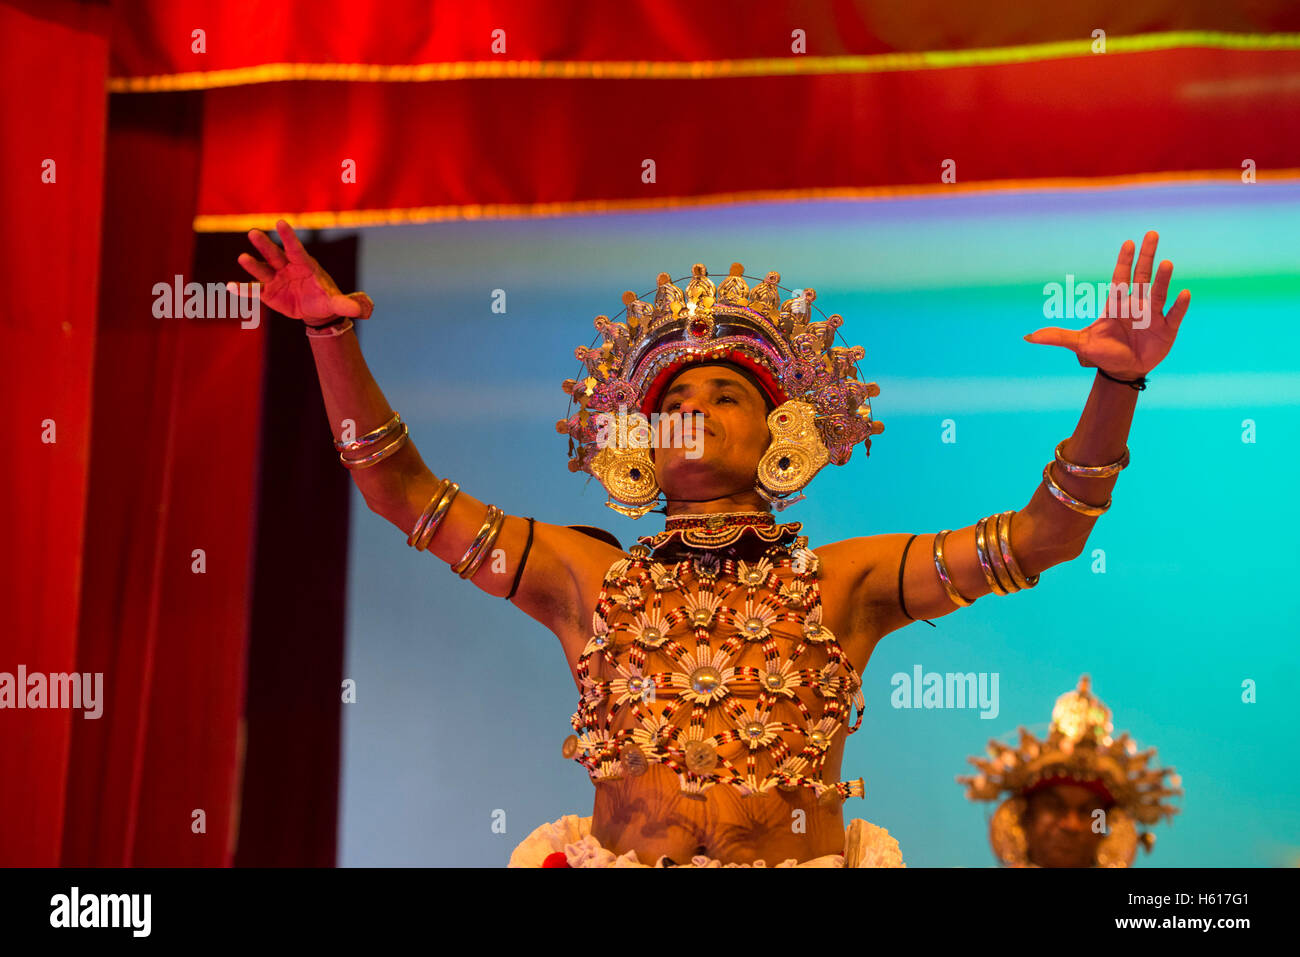 Traditional Kandyan dance show, Kandy, Sri Lanka Stock Photo